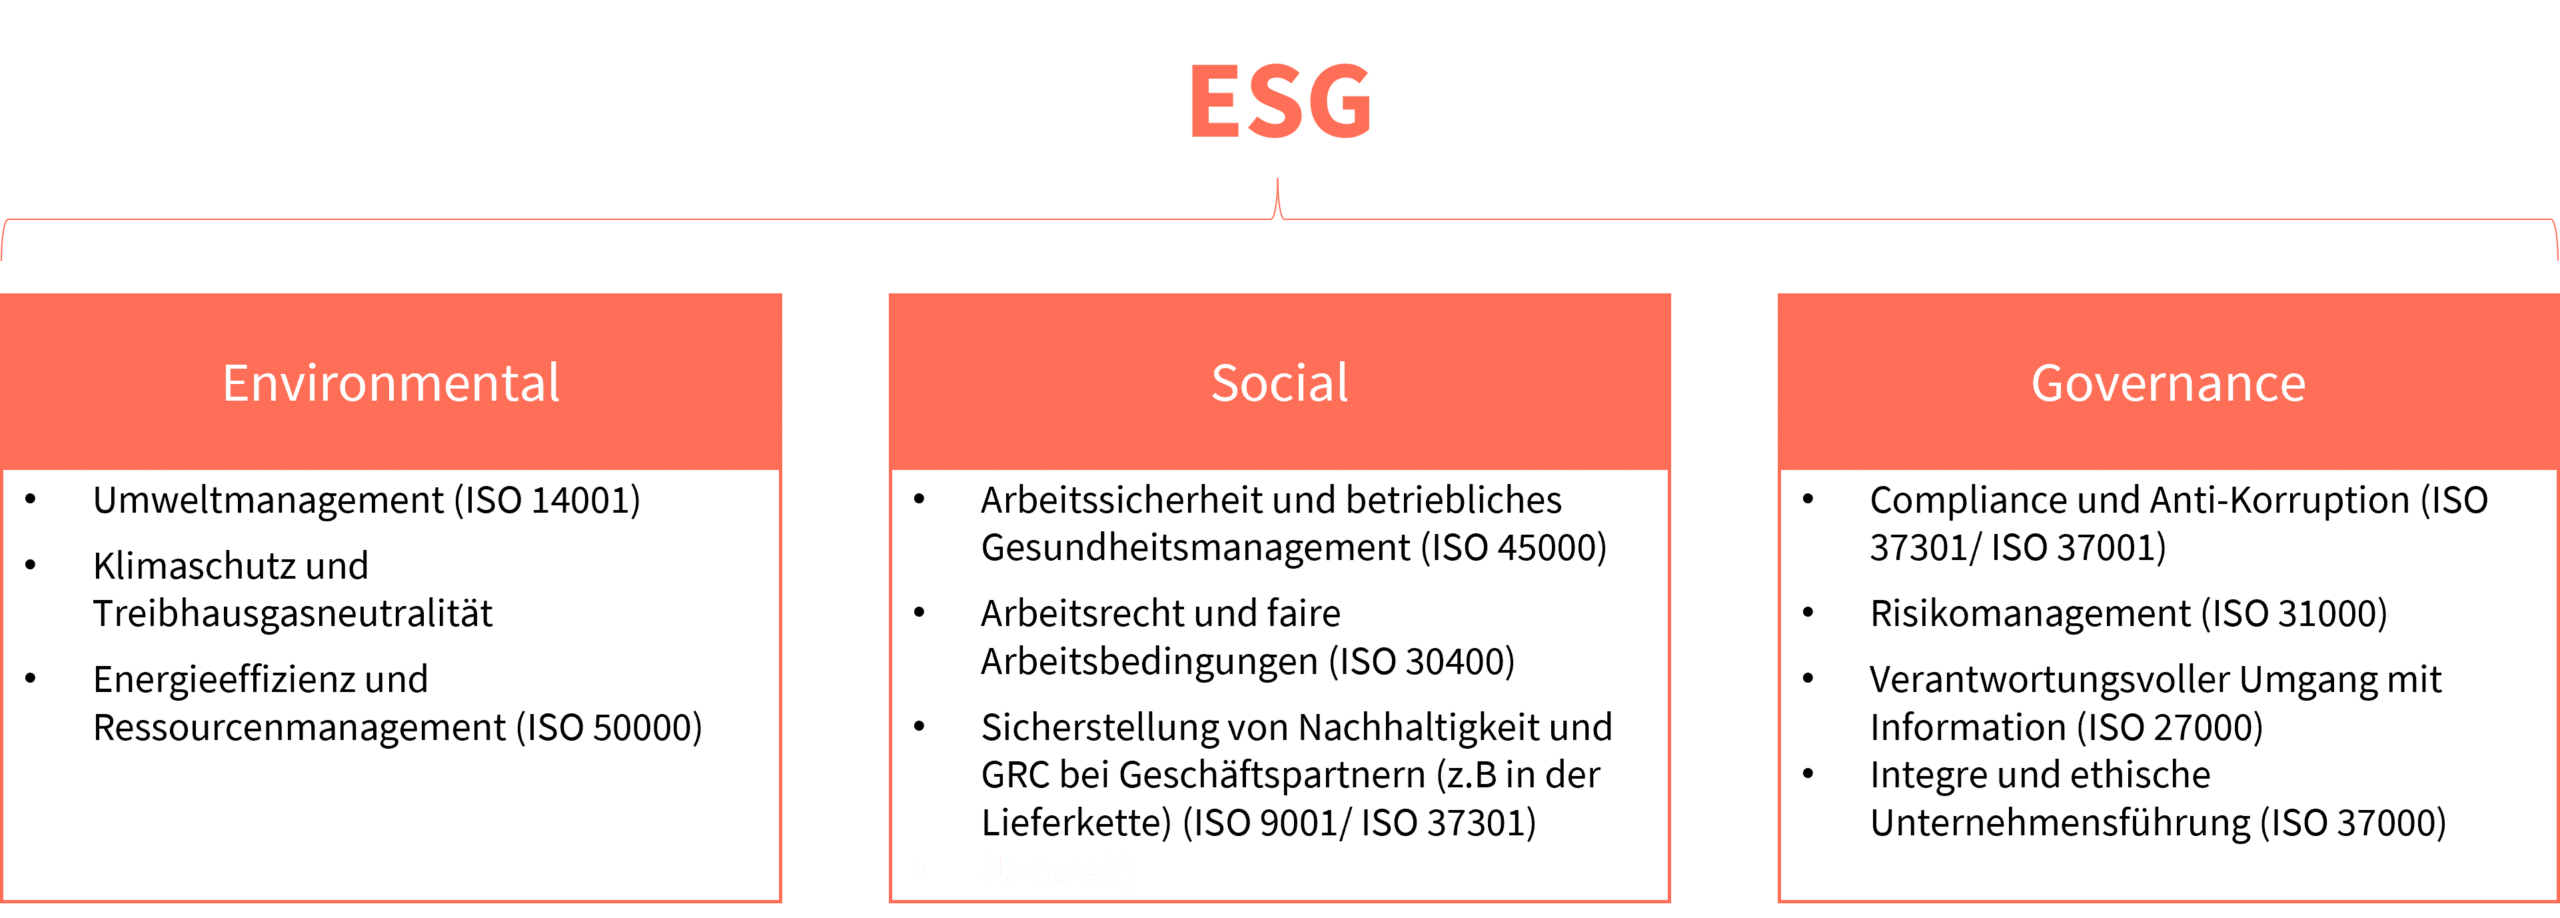 Abbildung 1: Die drei ESG-Kriterien